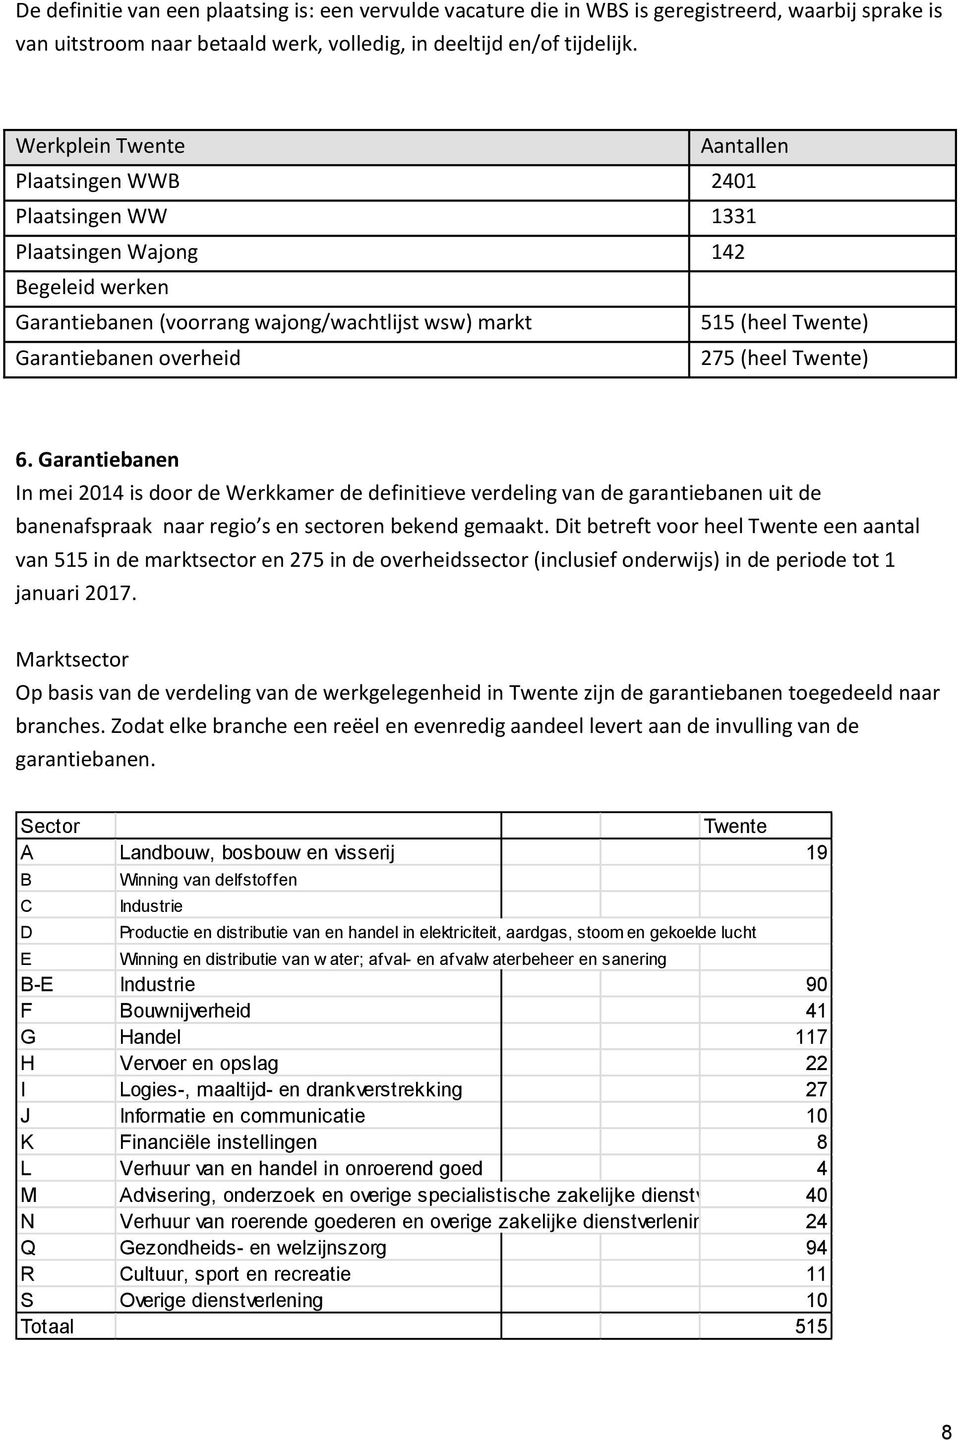 overheid 275 (heel Twente) 6. Garantiebanen In mei 2014 is door de Werkkamer de definitieve verdeling van de garantiebanen uit de banenafspraak naar regio s en sectoren bekend gemaakt.